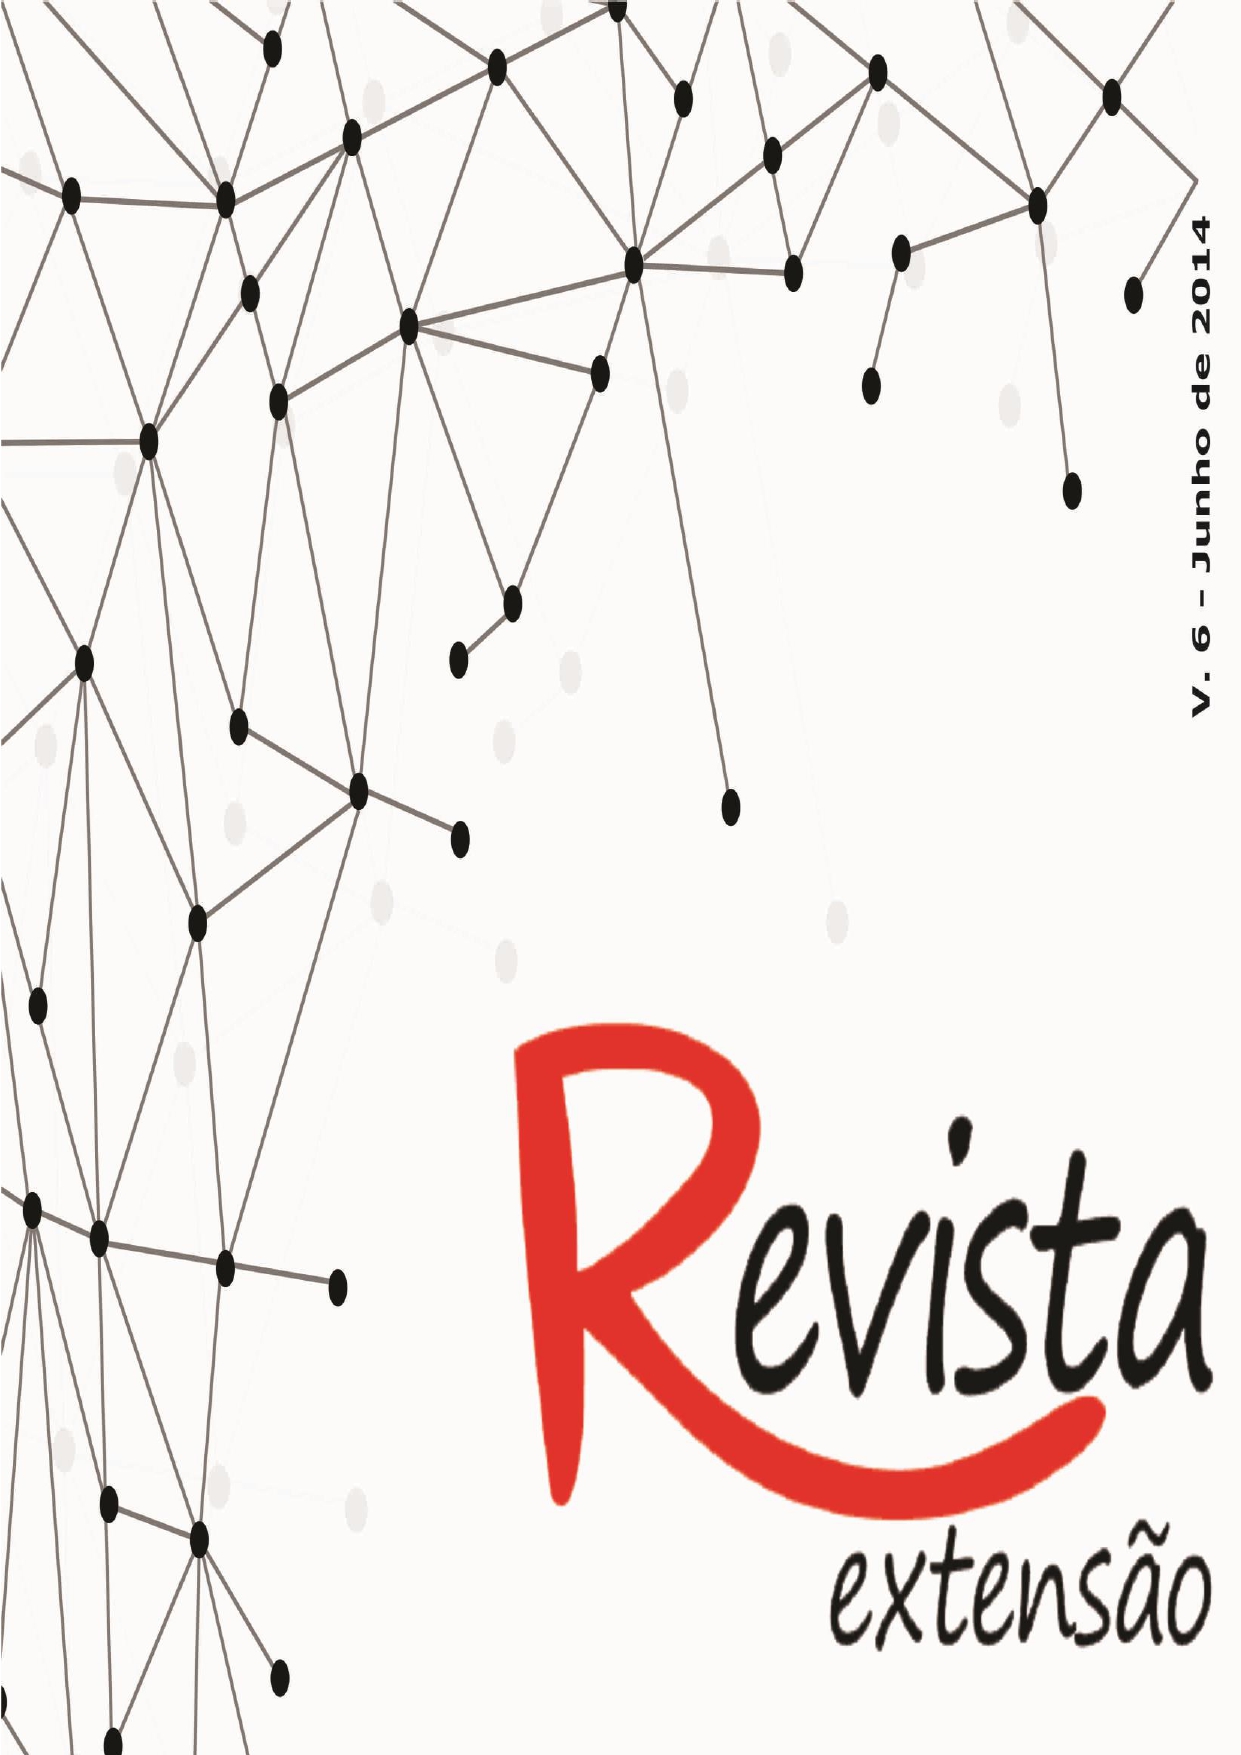 					Visualizar v. 6 (2014): Revista Extensão
				